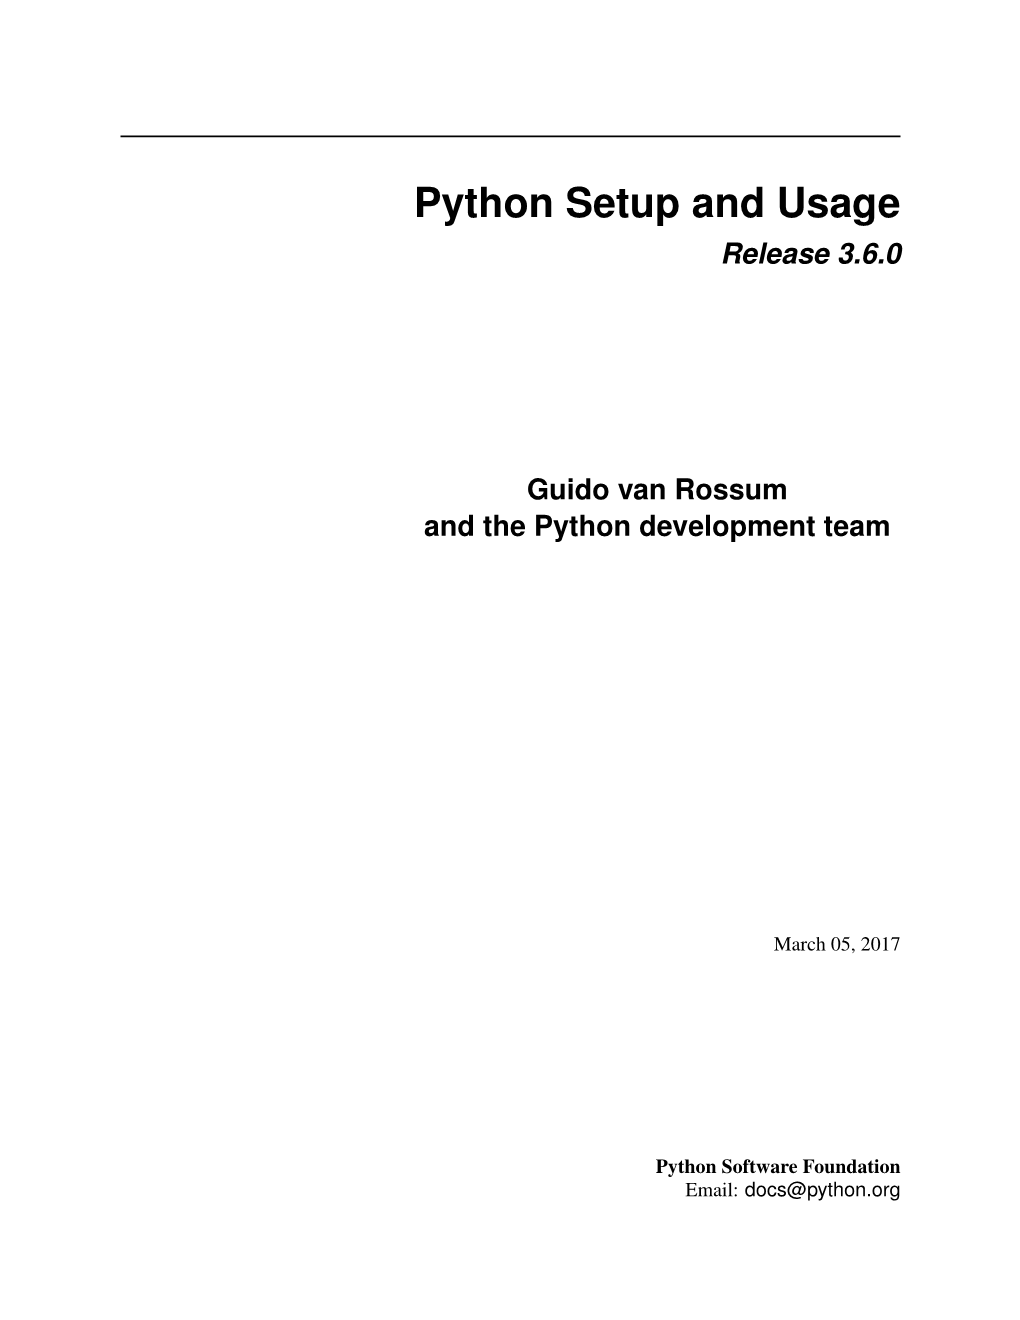 Python Setup and Usage Release 3.6.0